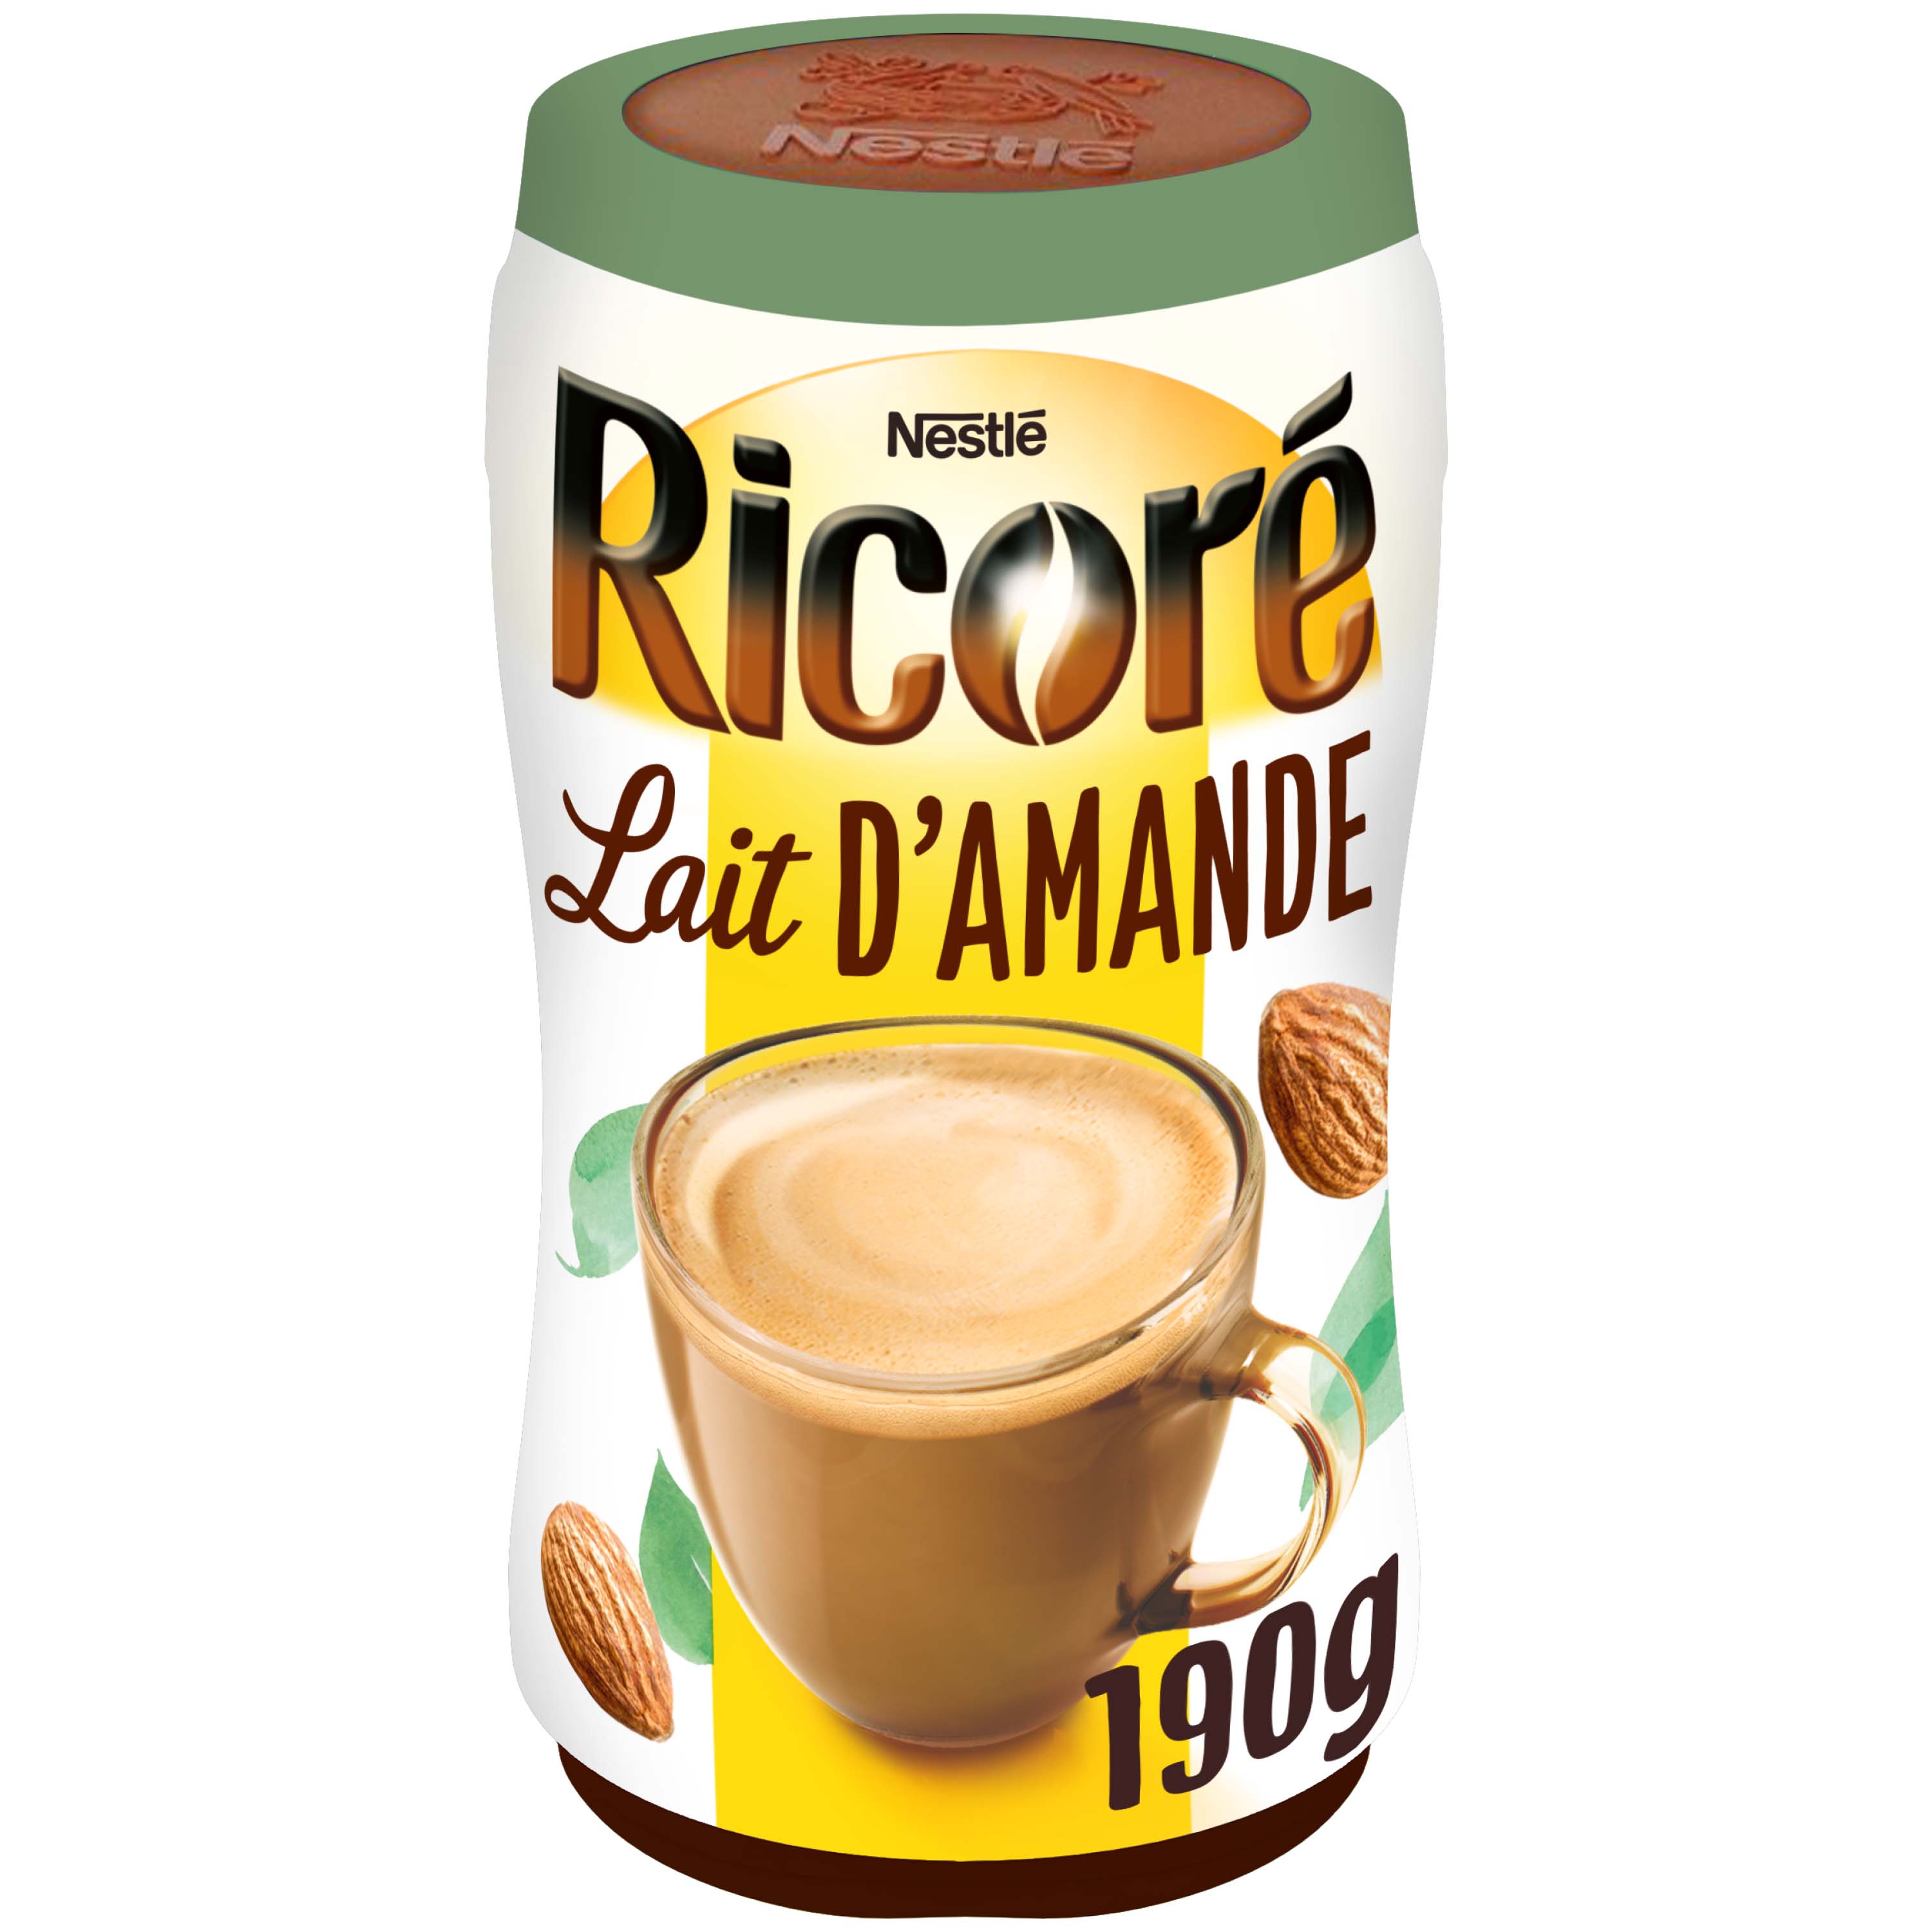 Nestlé Ricoré Original - Substitut de Café - Recharge de 180 g